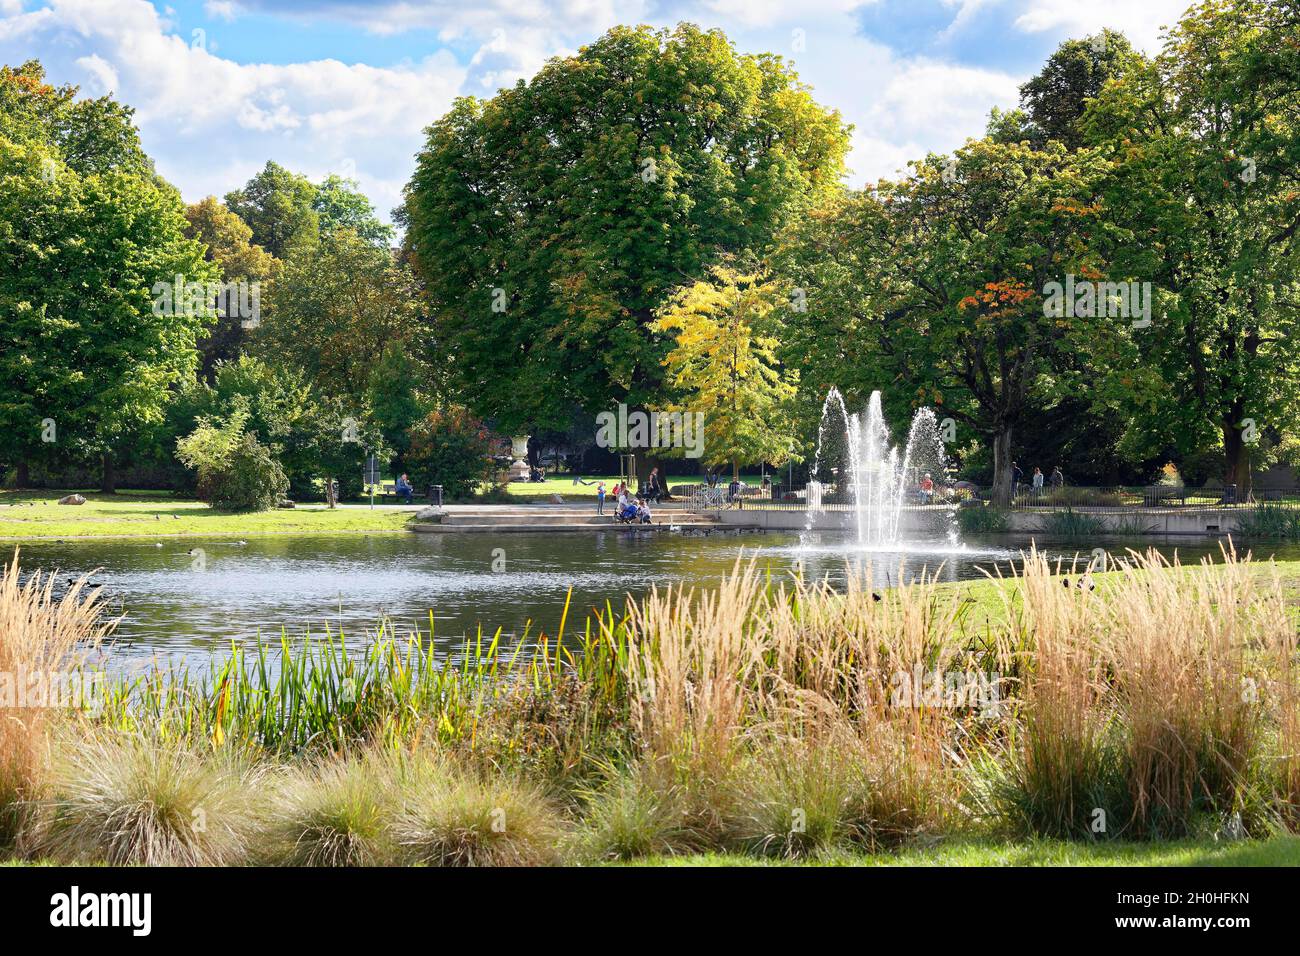 Estanque, estanque con fuente rodeada de árboles altos, parque municipal, Núremberg, Franconia media, Franconia, Baviera, Alemania Foto de stock